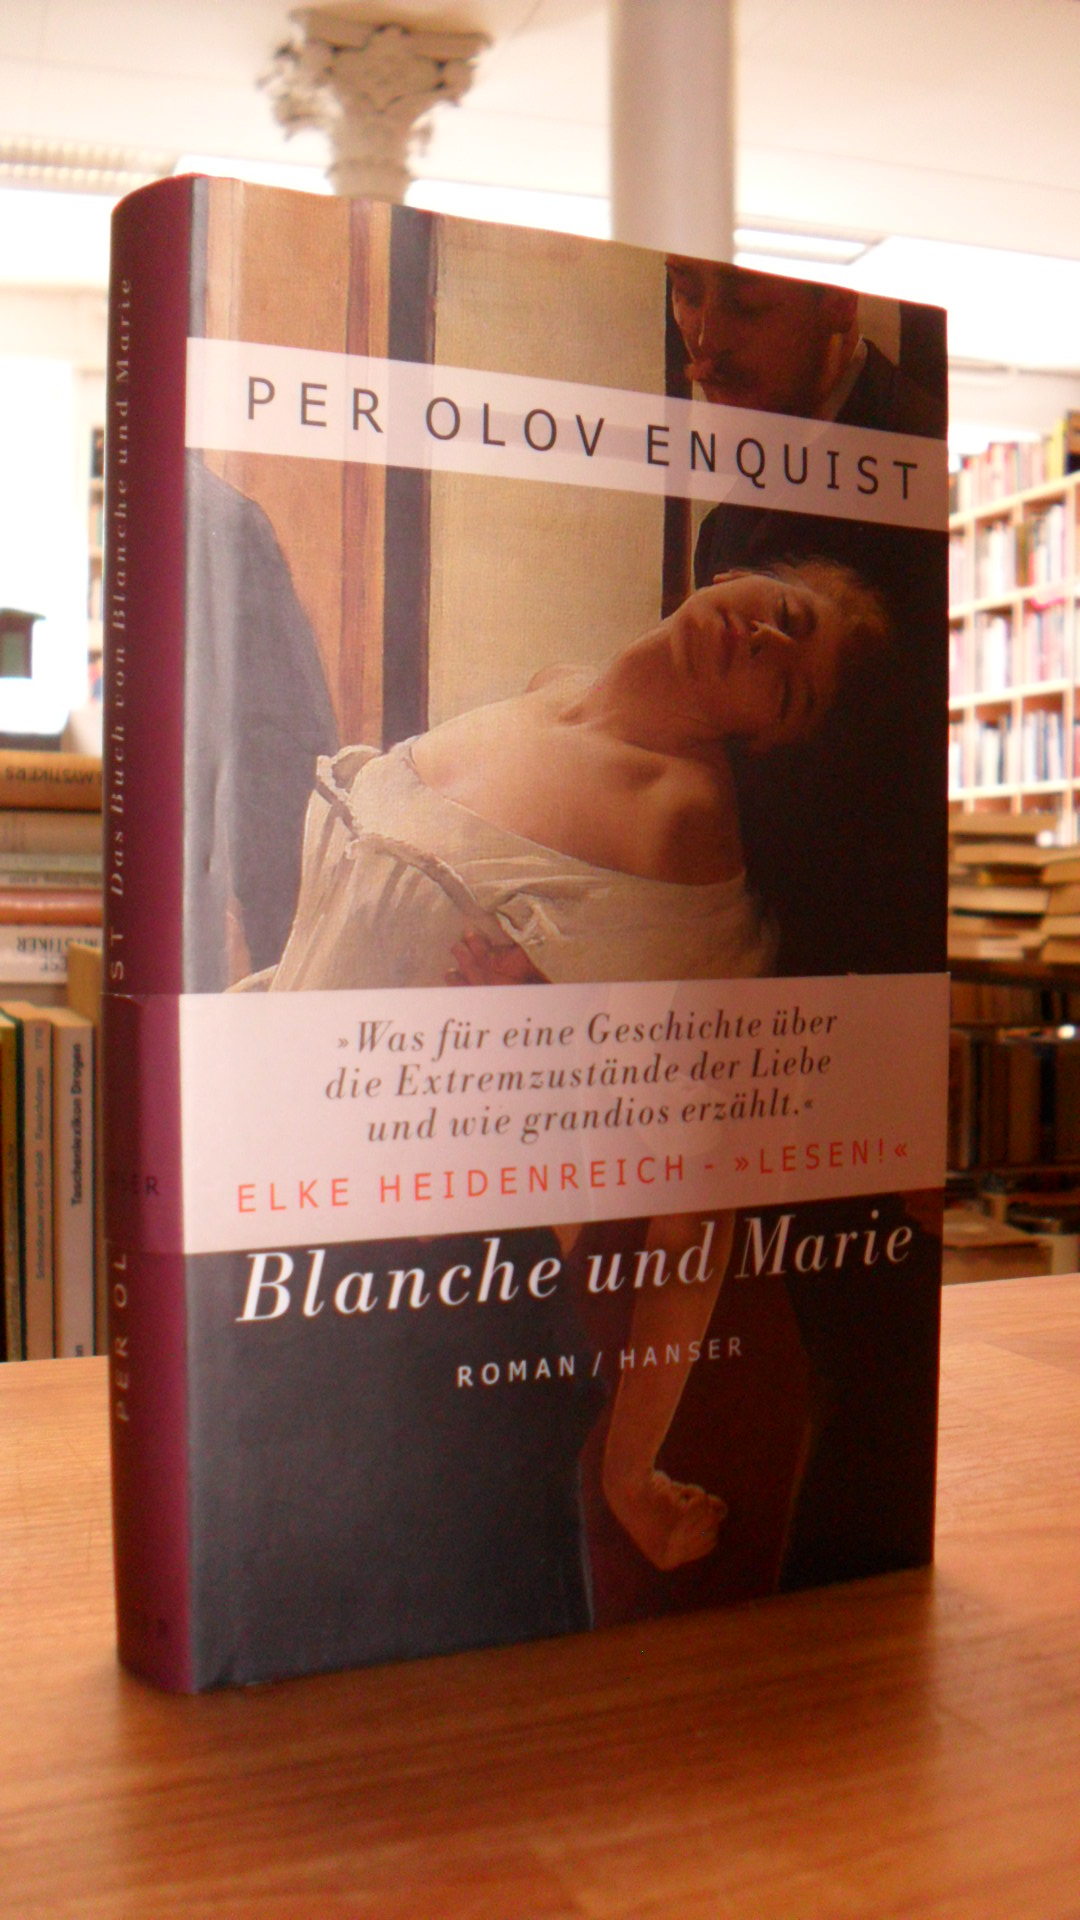 Enquist, Das Buch von Blanche und Marie,